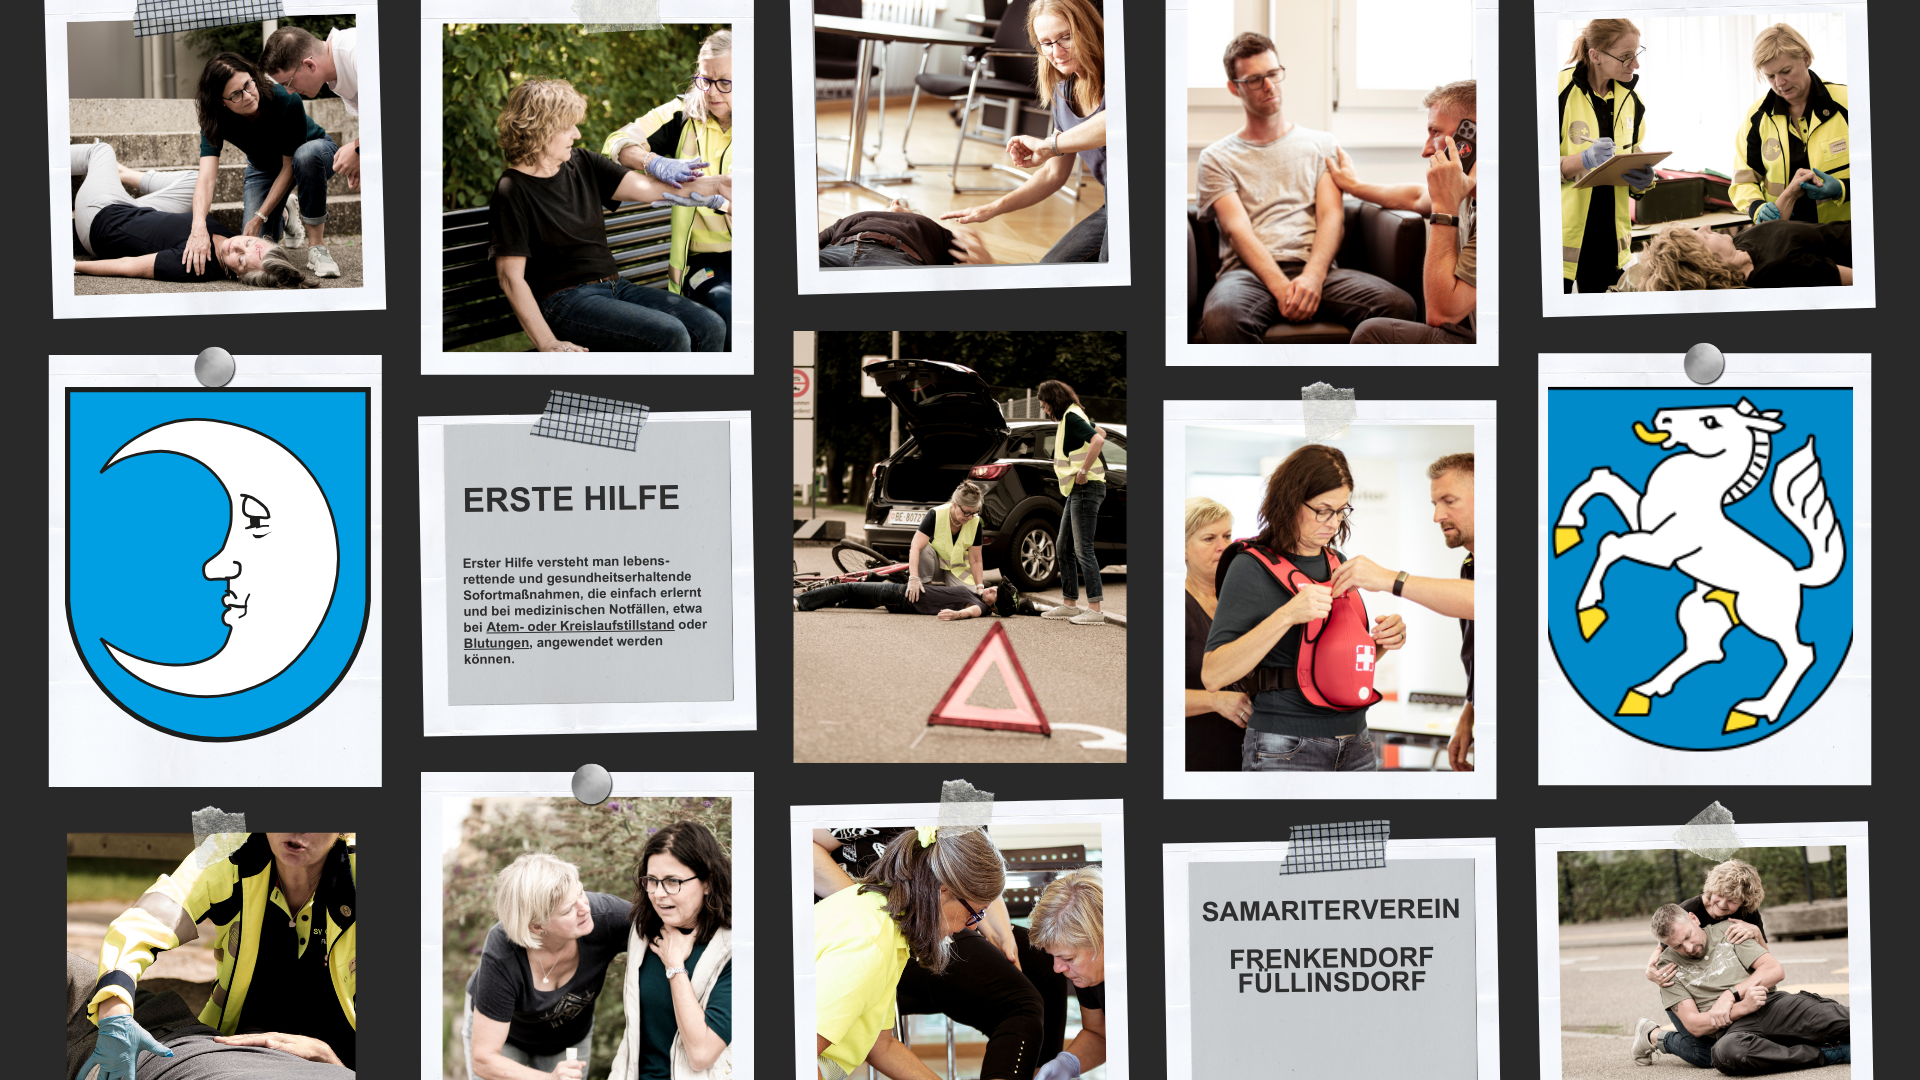 Bild auf der Startseite Samariter-ff.ch